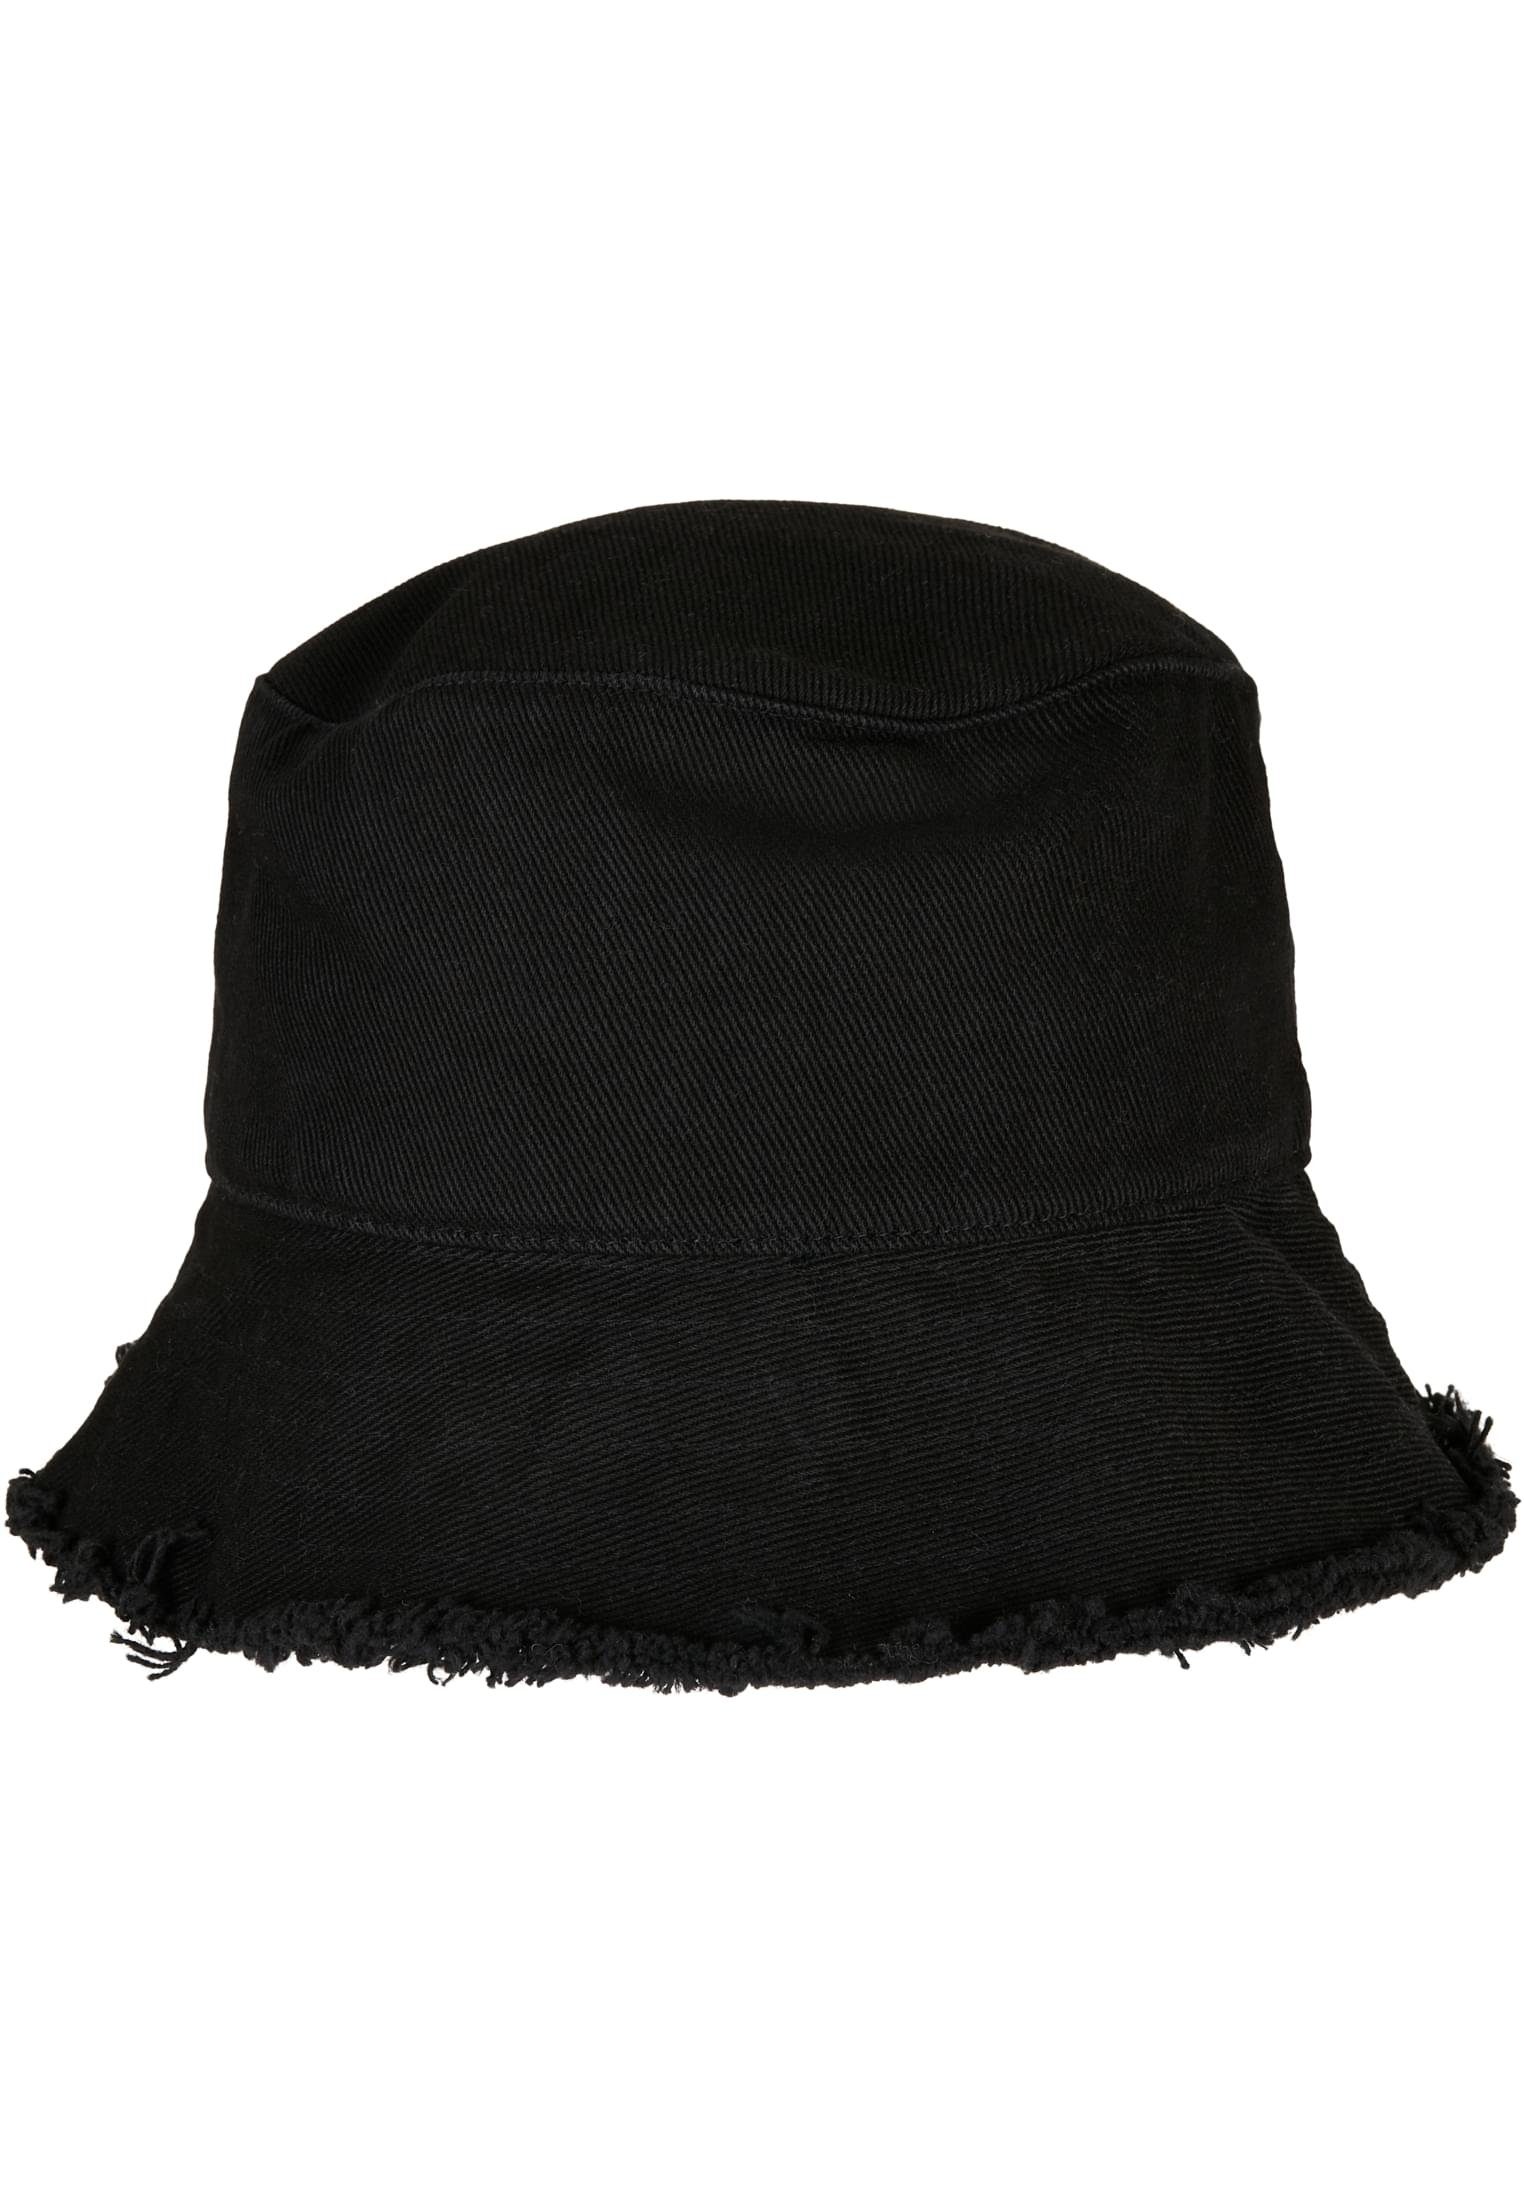 Flex Flexfit Edge Cap Accessoires black Open Hat Bucket